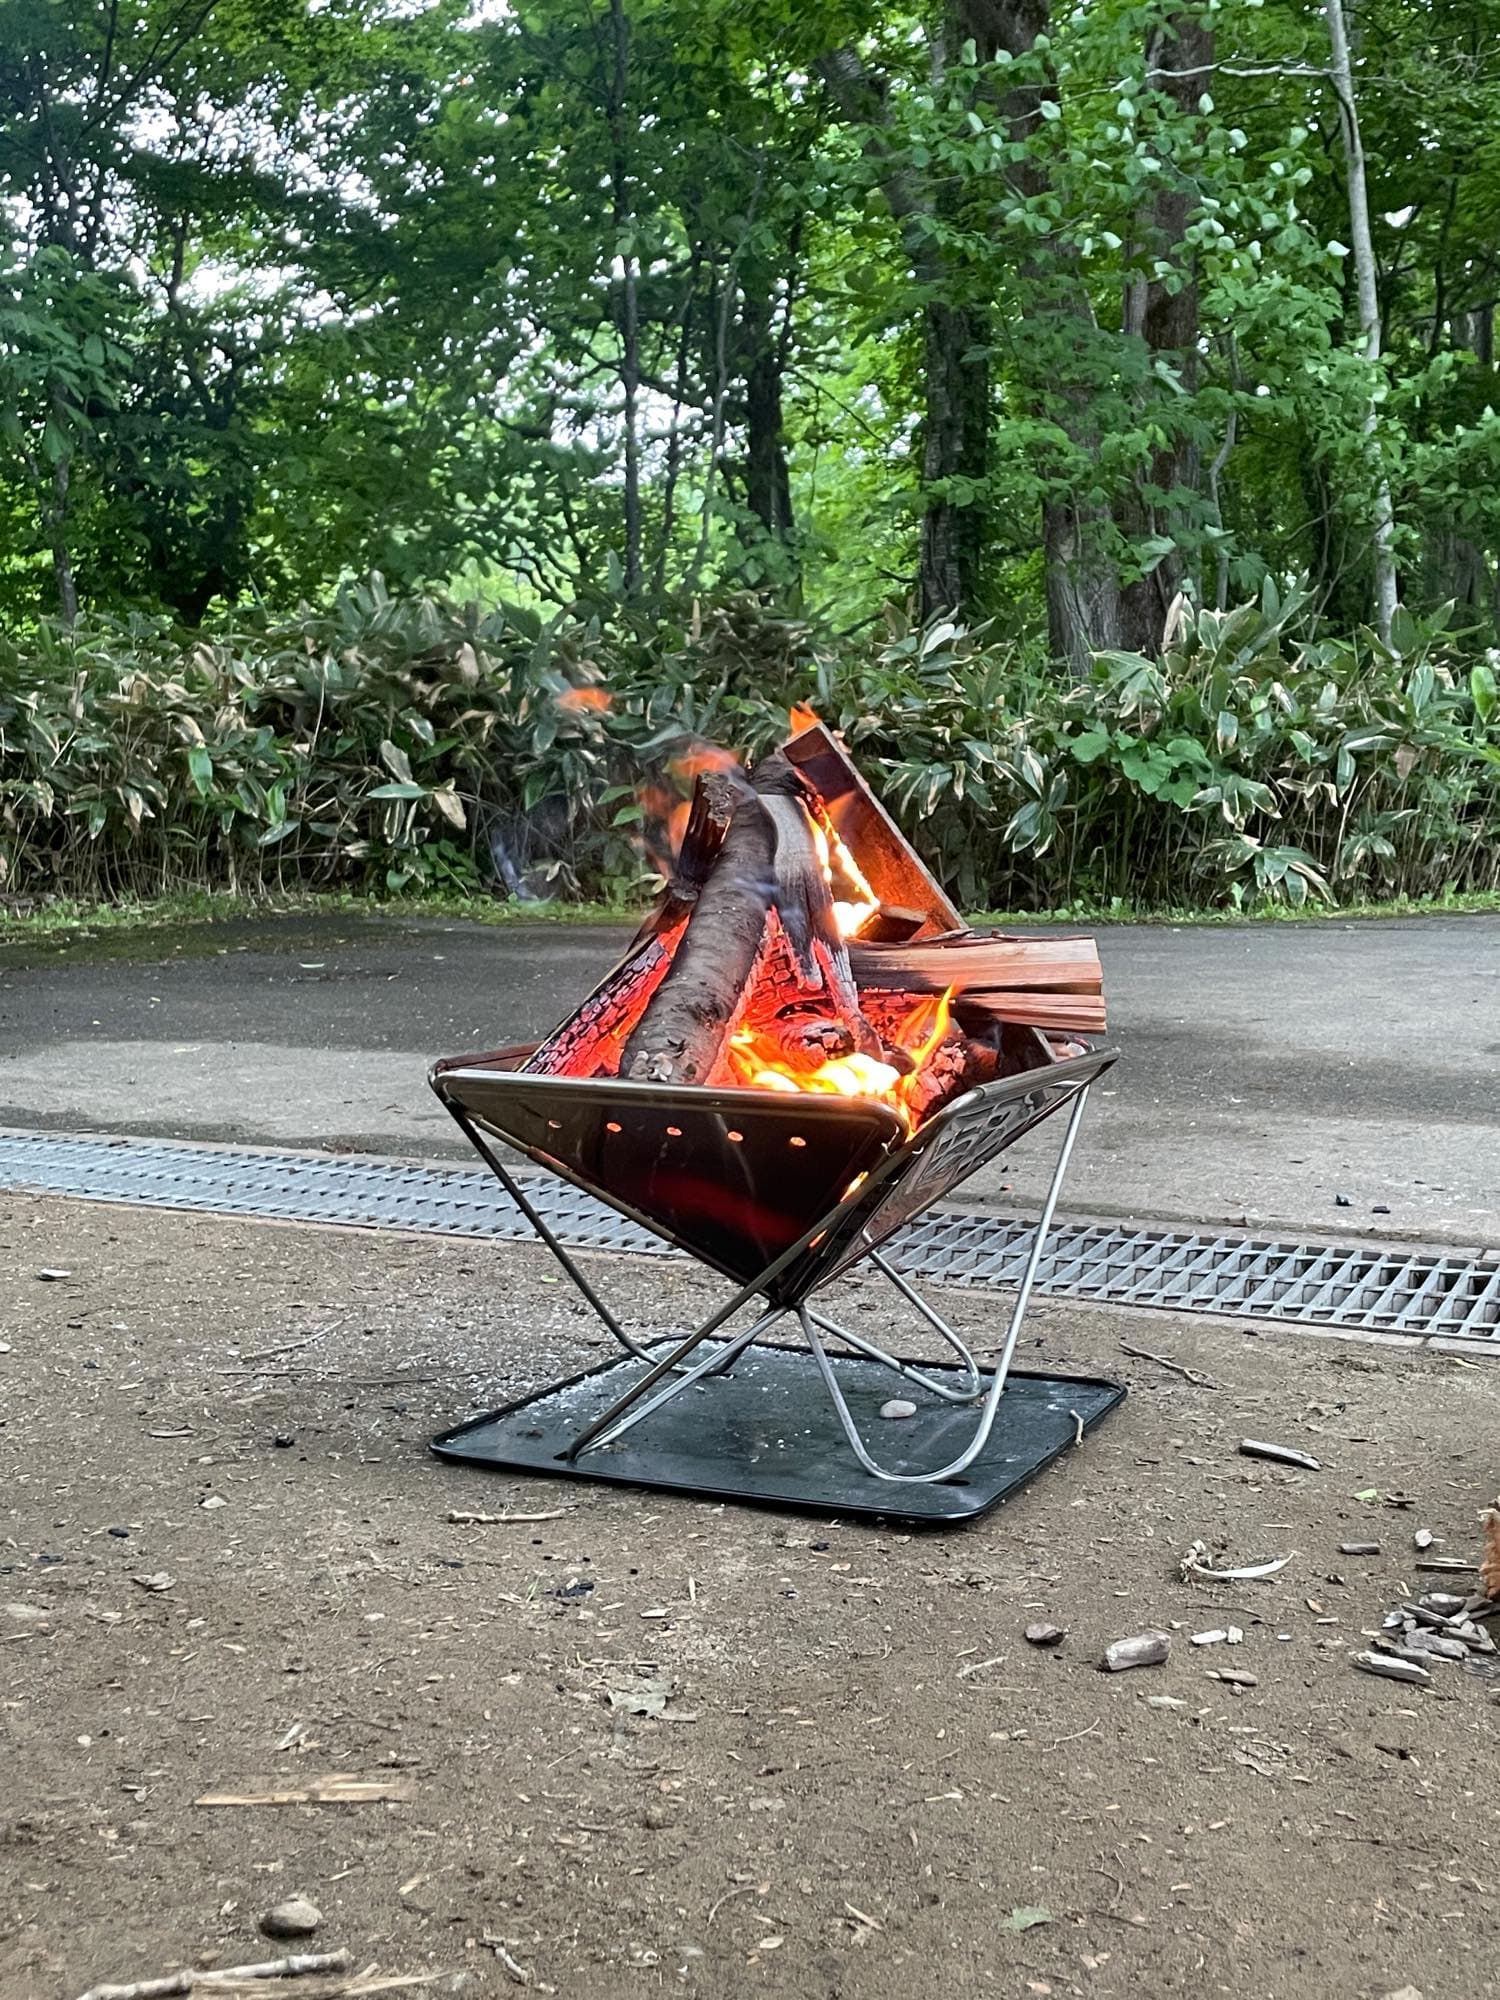 古山貯水池自然公園オートキャンプ場で焚き火を楽しむキャンプ